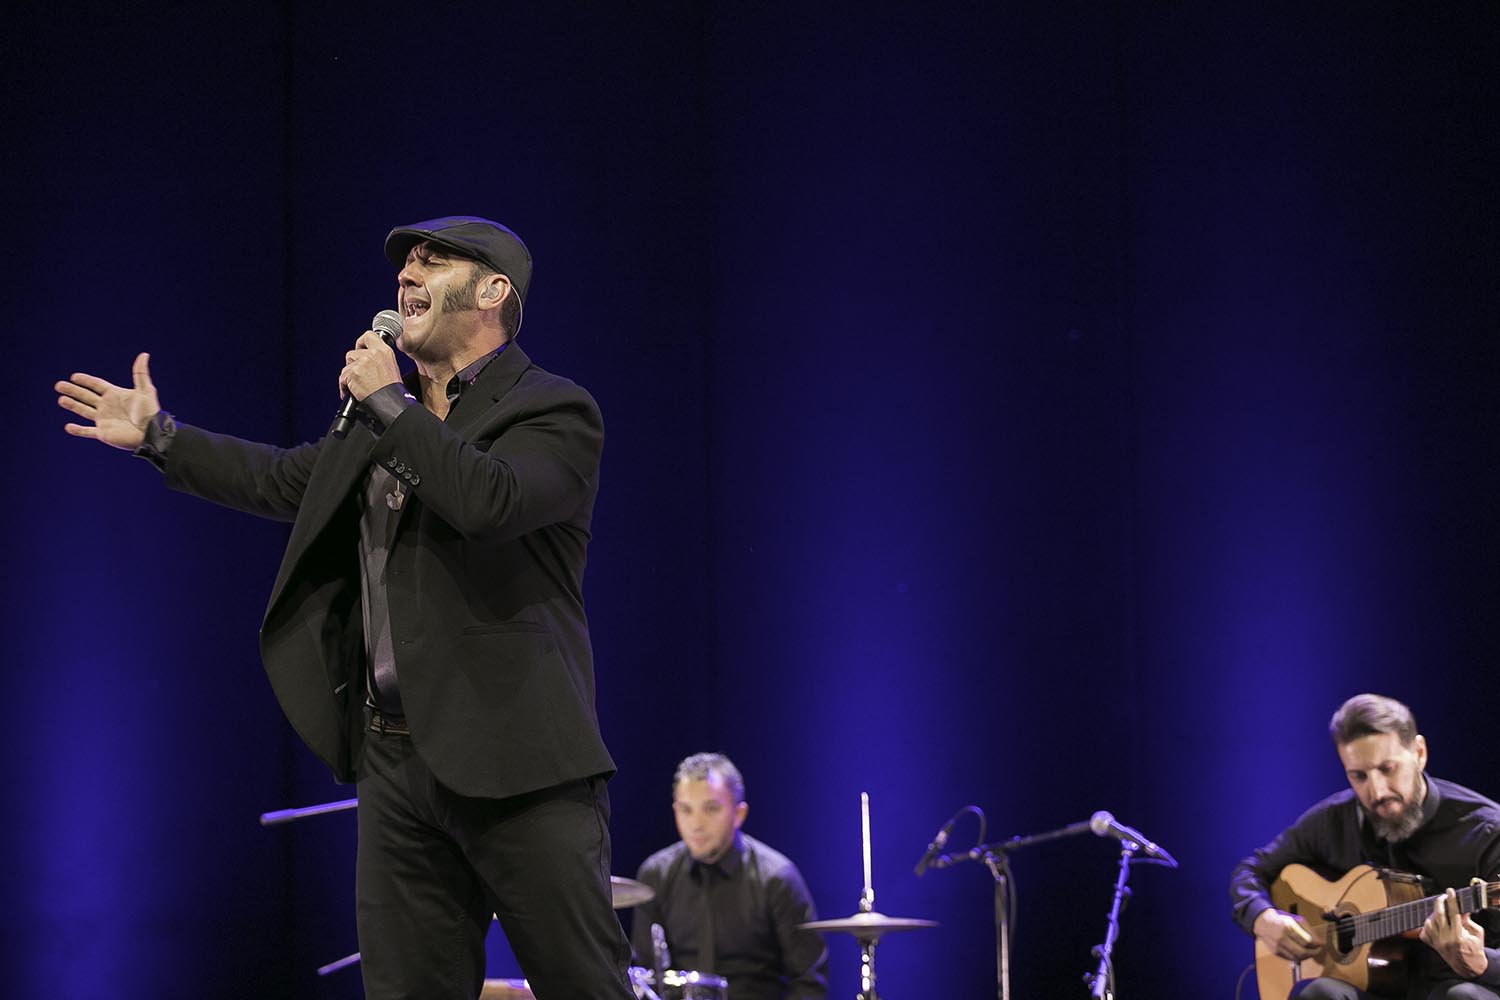 Barcelona 06/07/2018 Paco Candela, cantante de Flamenco, en el Auditori del Forum.Fotografia de Joan Cortadellas